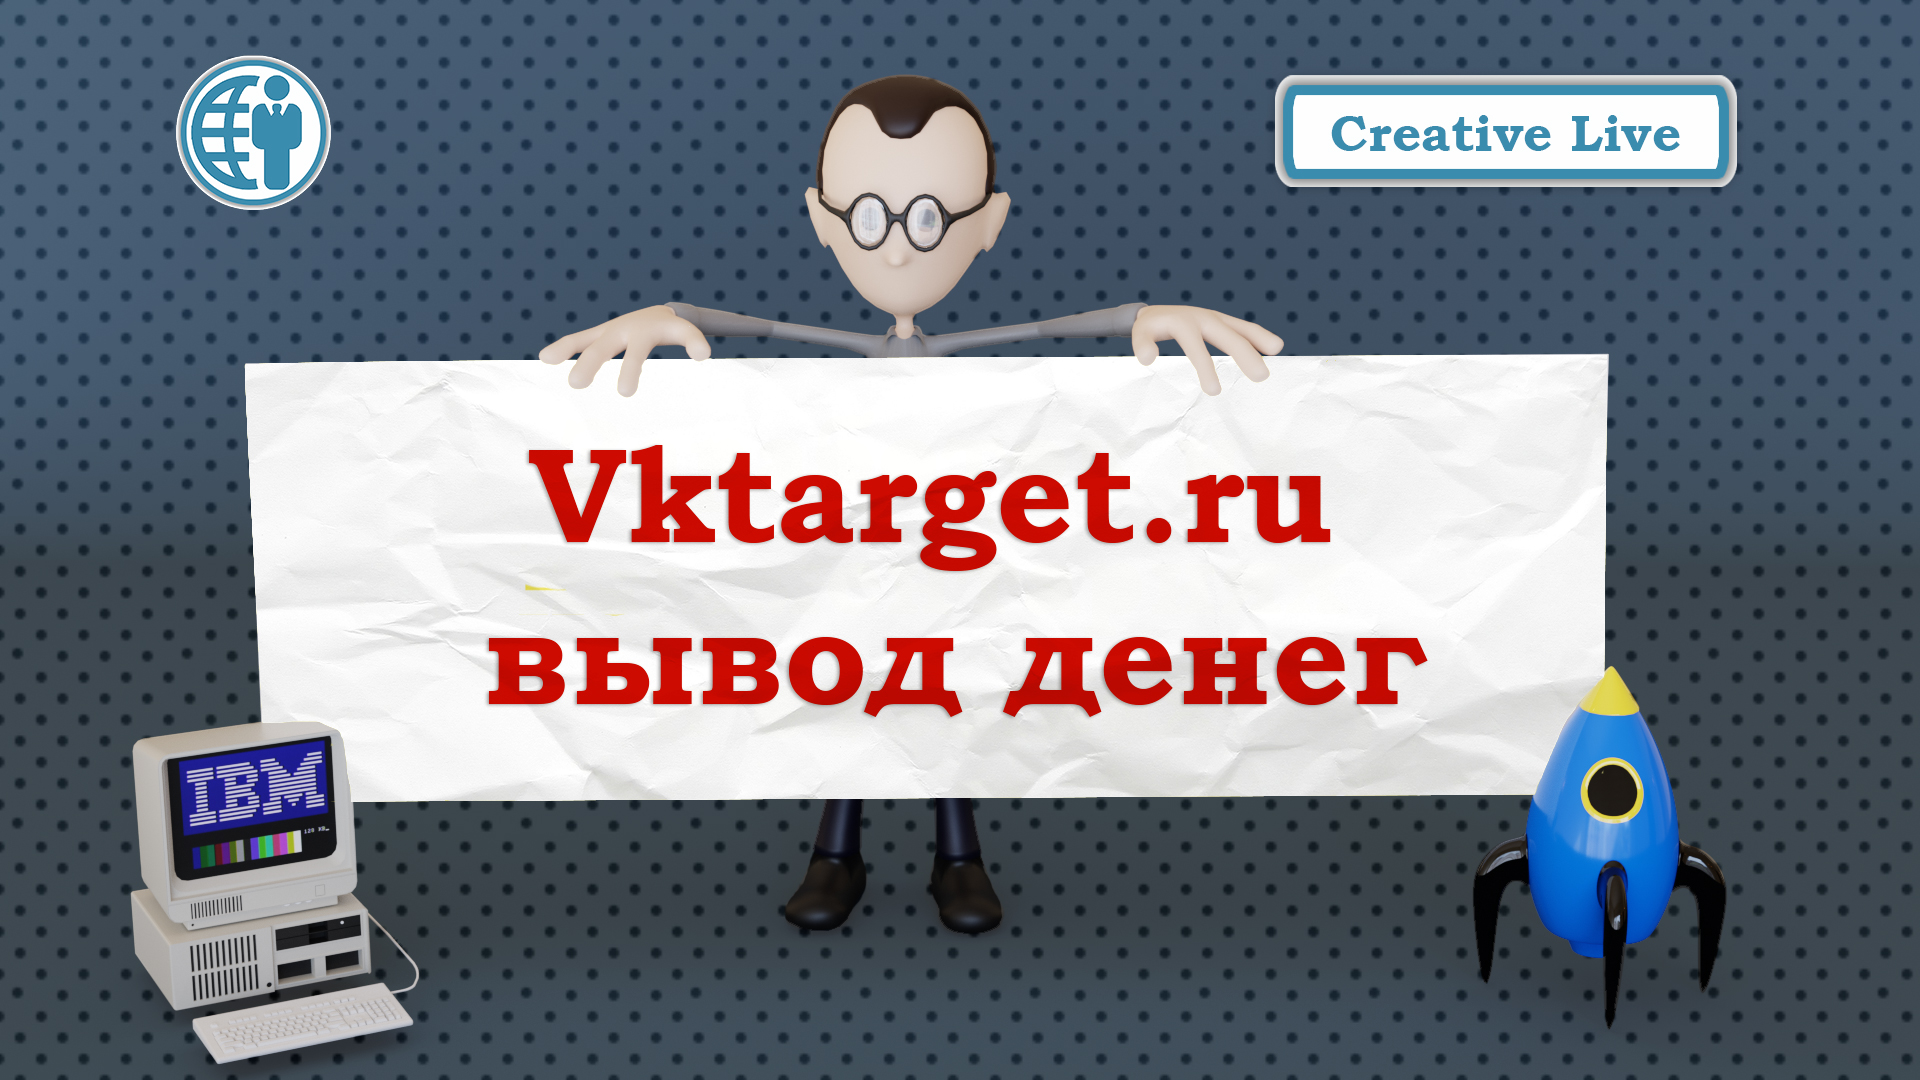 ✅ Vktarget - вывод денег. Заработок на социальных сетях